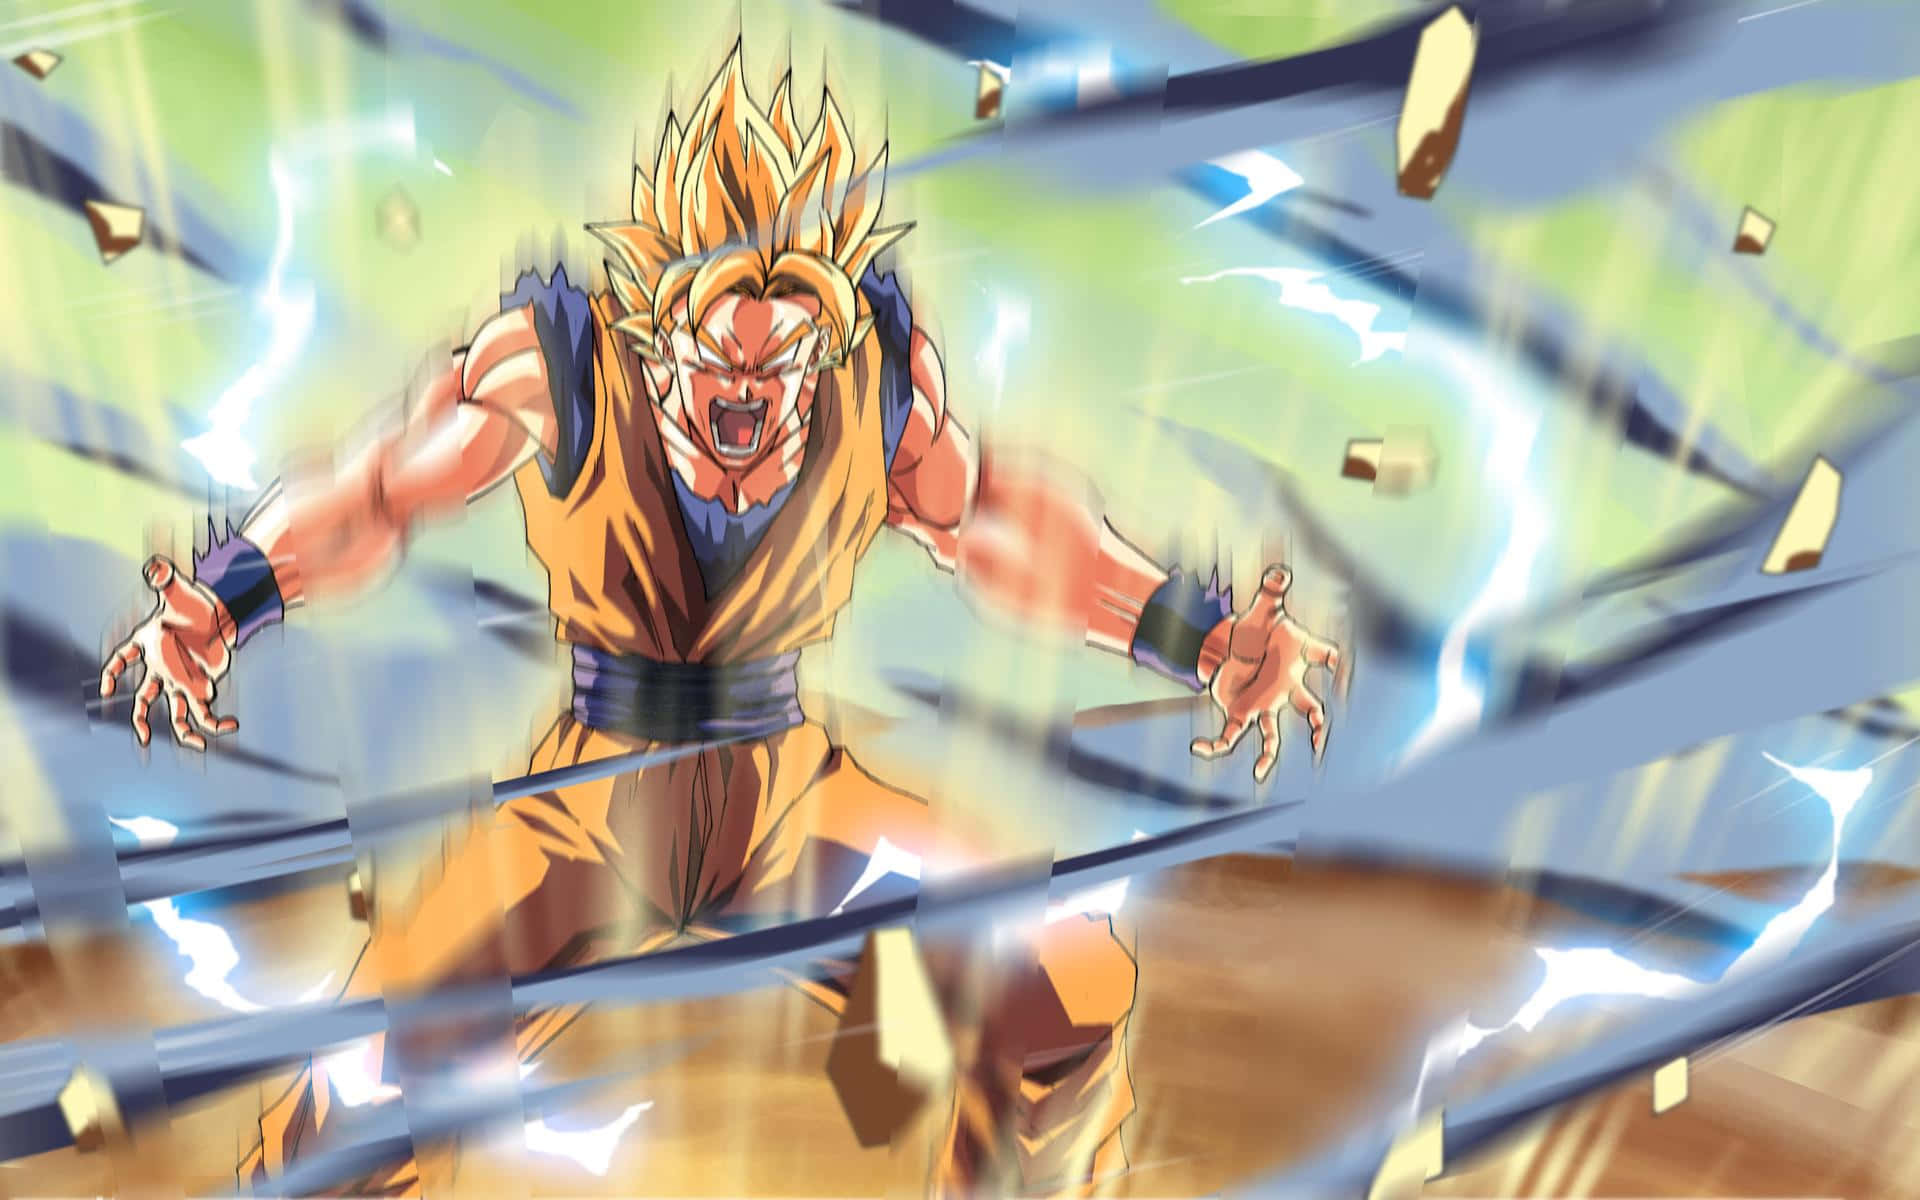 Angry Goku Wallpaper